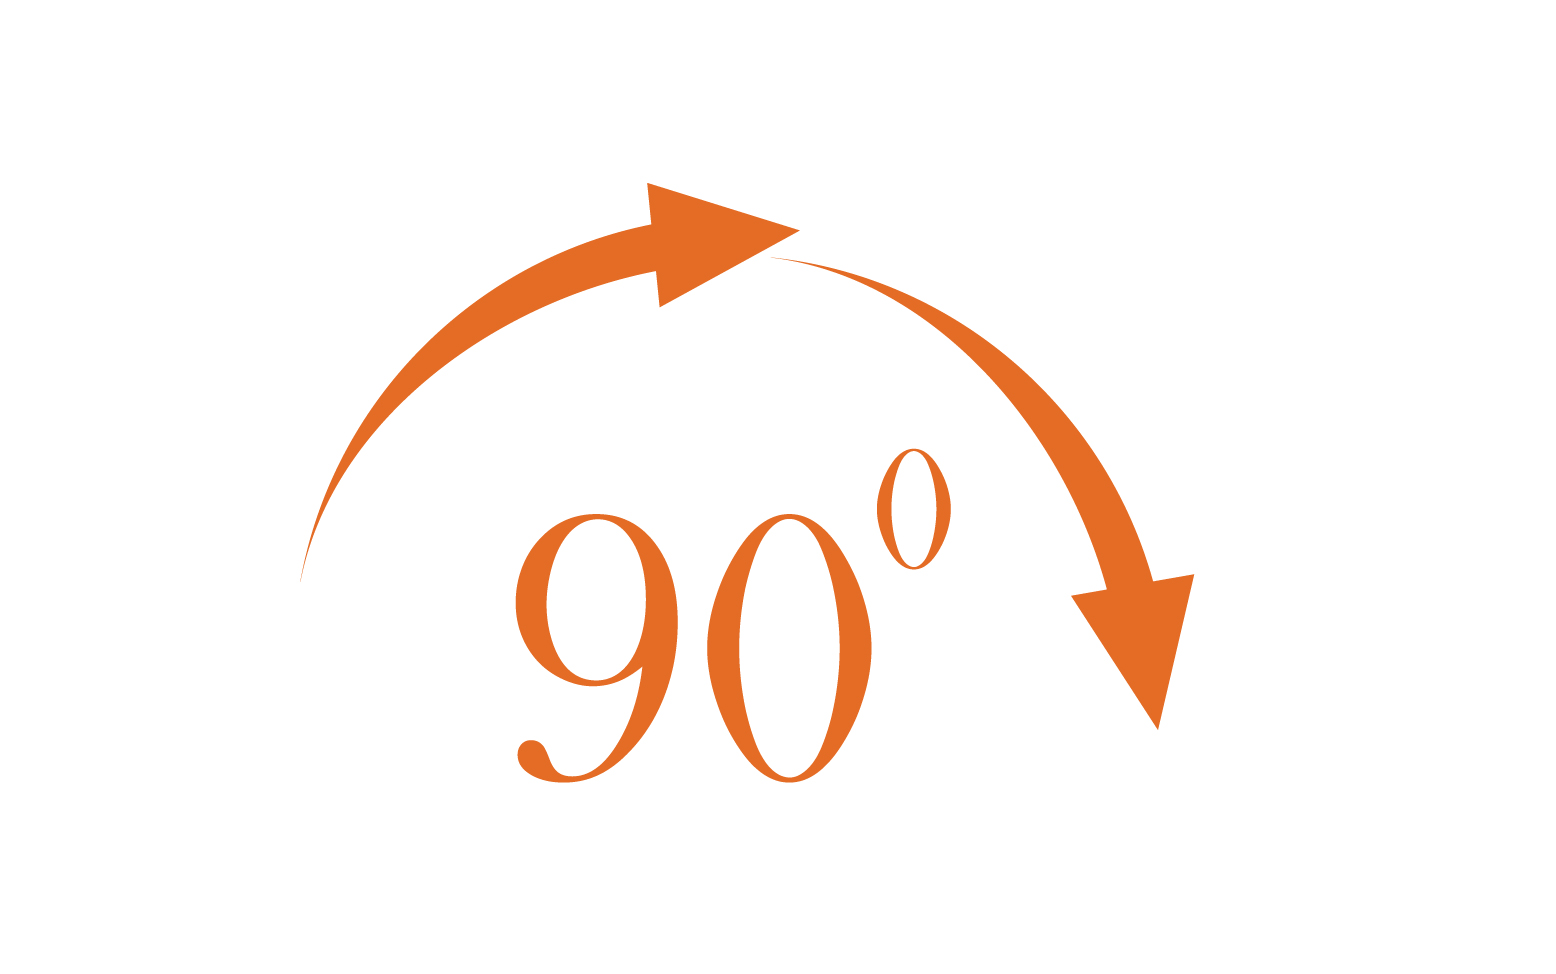 90 degree angle rotation icon symbol logo v54